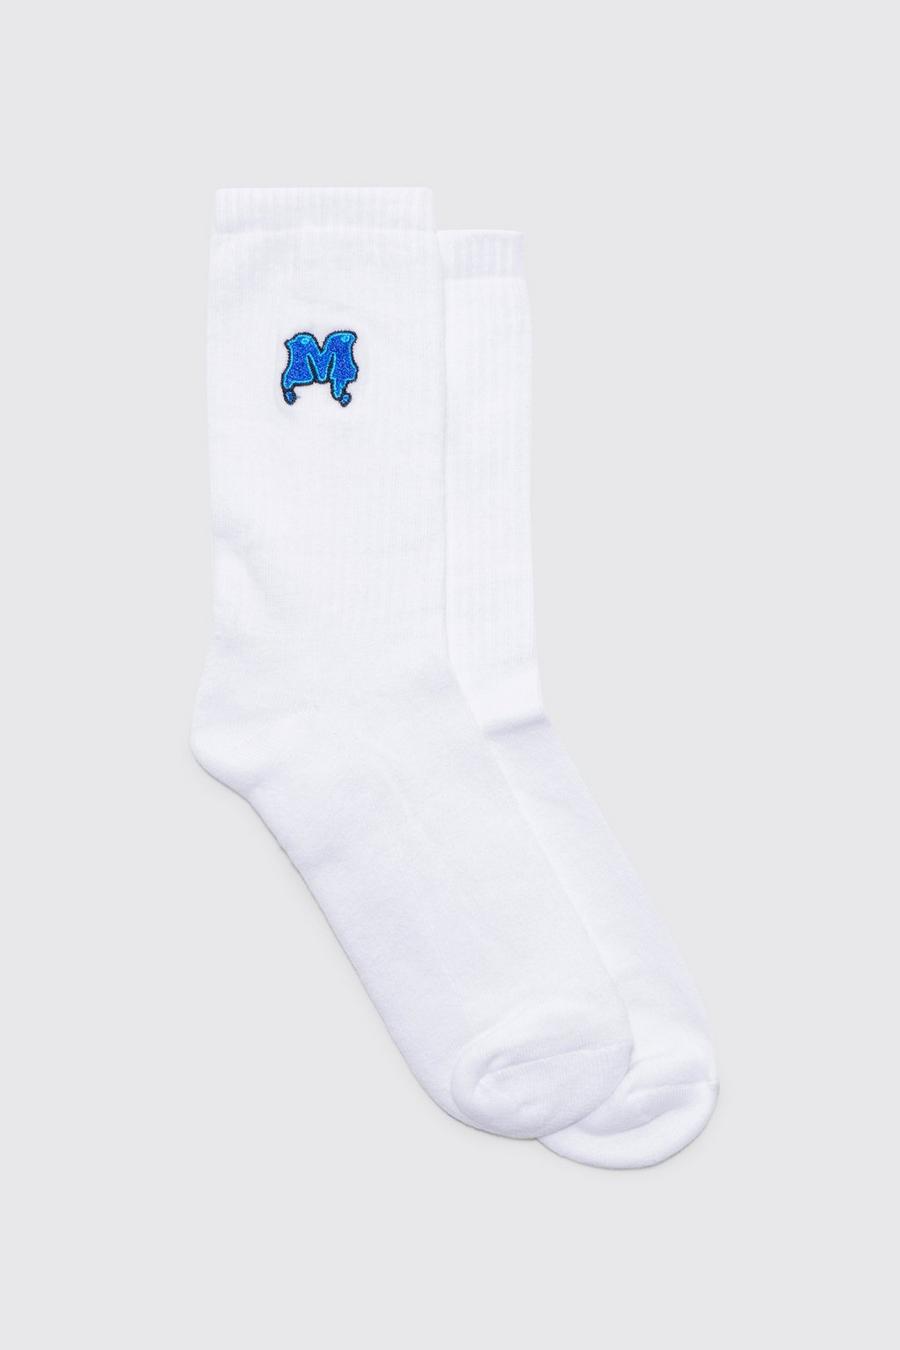 Sport-Socken mit M-Stickerei, White